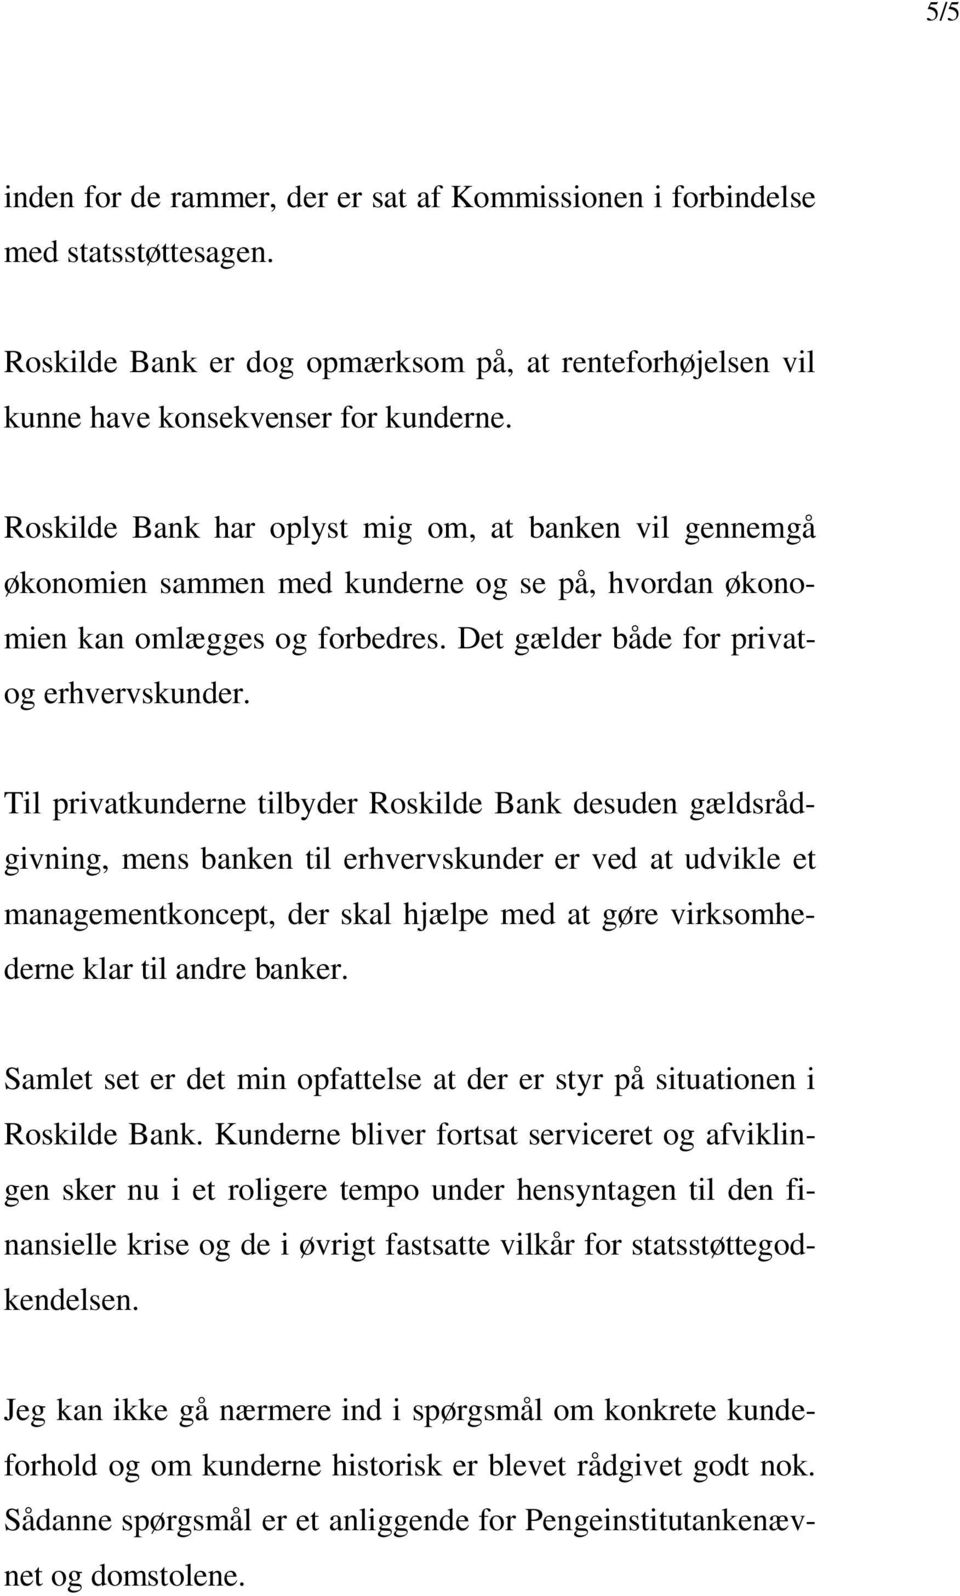 Til privatkunderne tilbyder Roskilde Bank desuden gældsrådgivning, mens banken til erhvervskunder er ved at udvikle et managementkoncept, der skal hjælpe med at gøre virksomhederne klar til andre